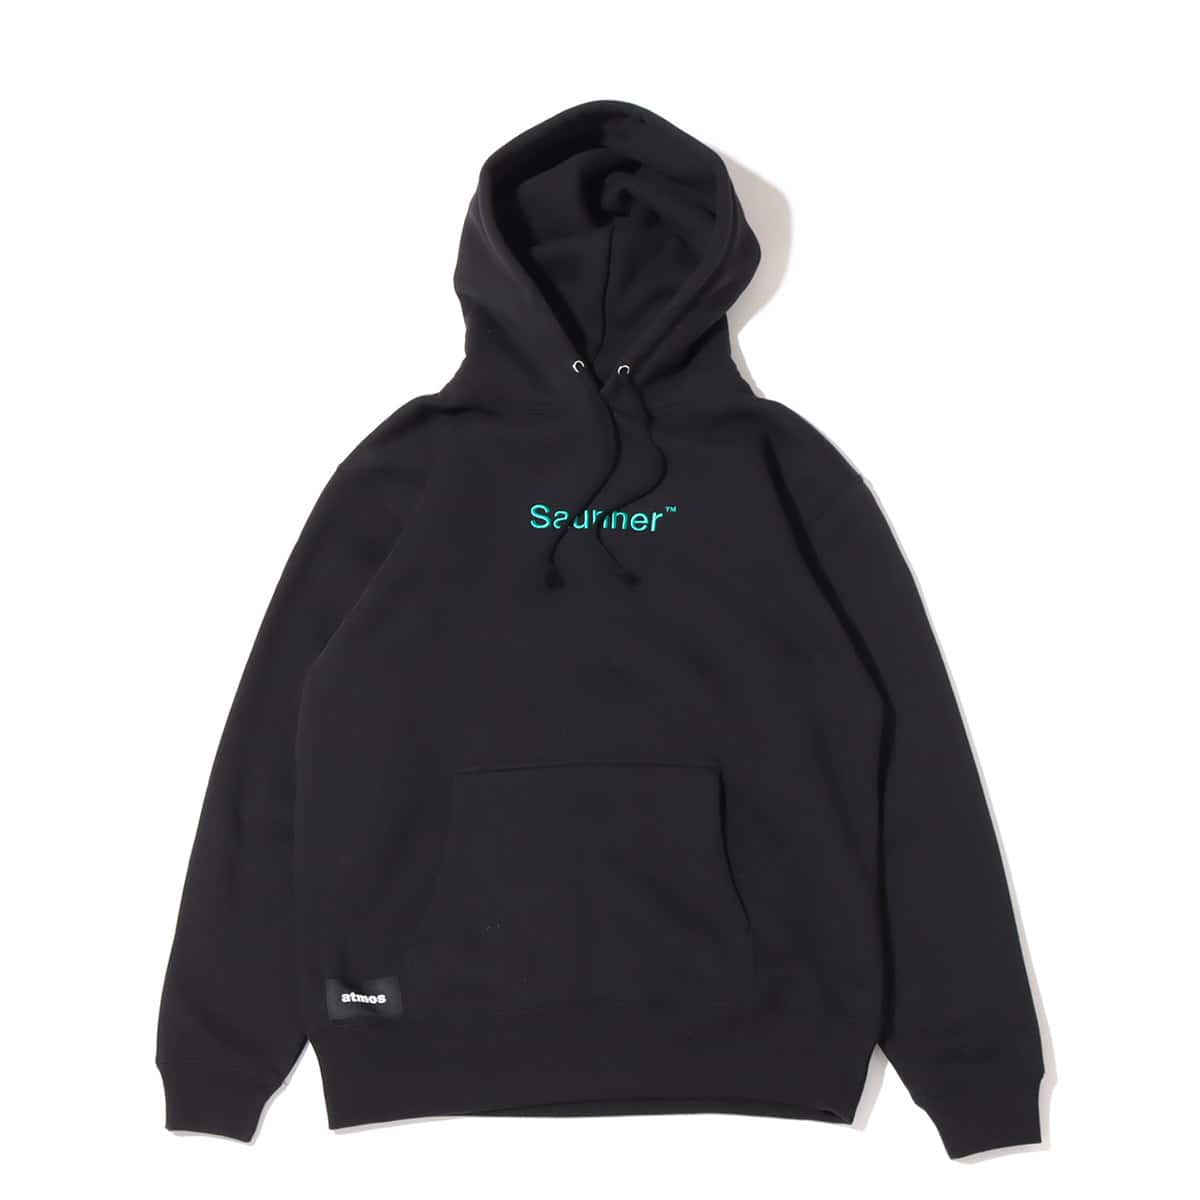 TTNE × atmos Saunner Logo Hooded Sweatshirt BLACK/JADE